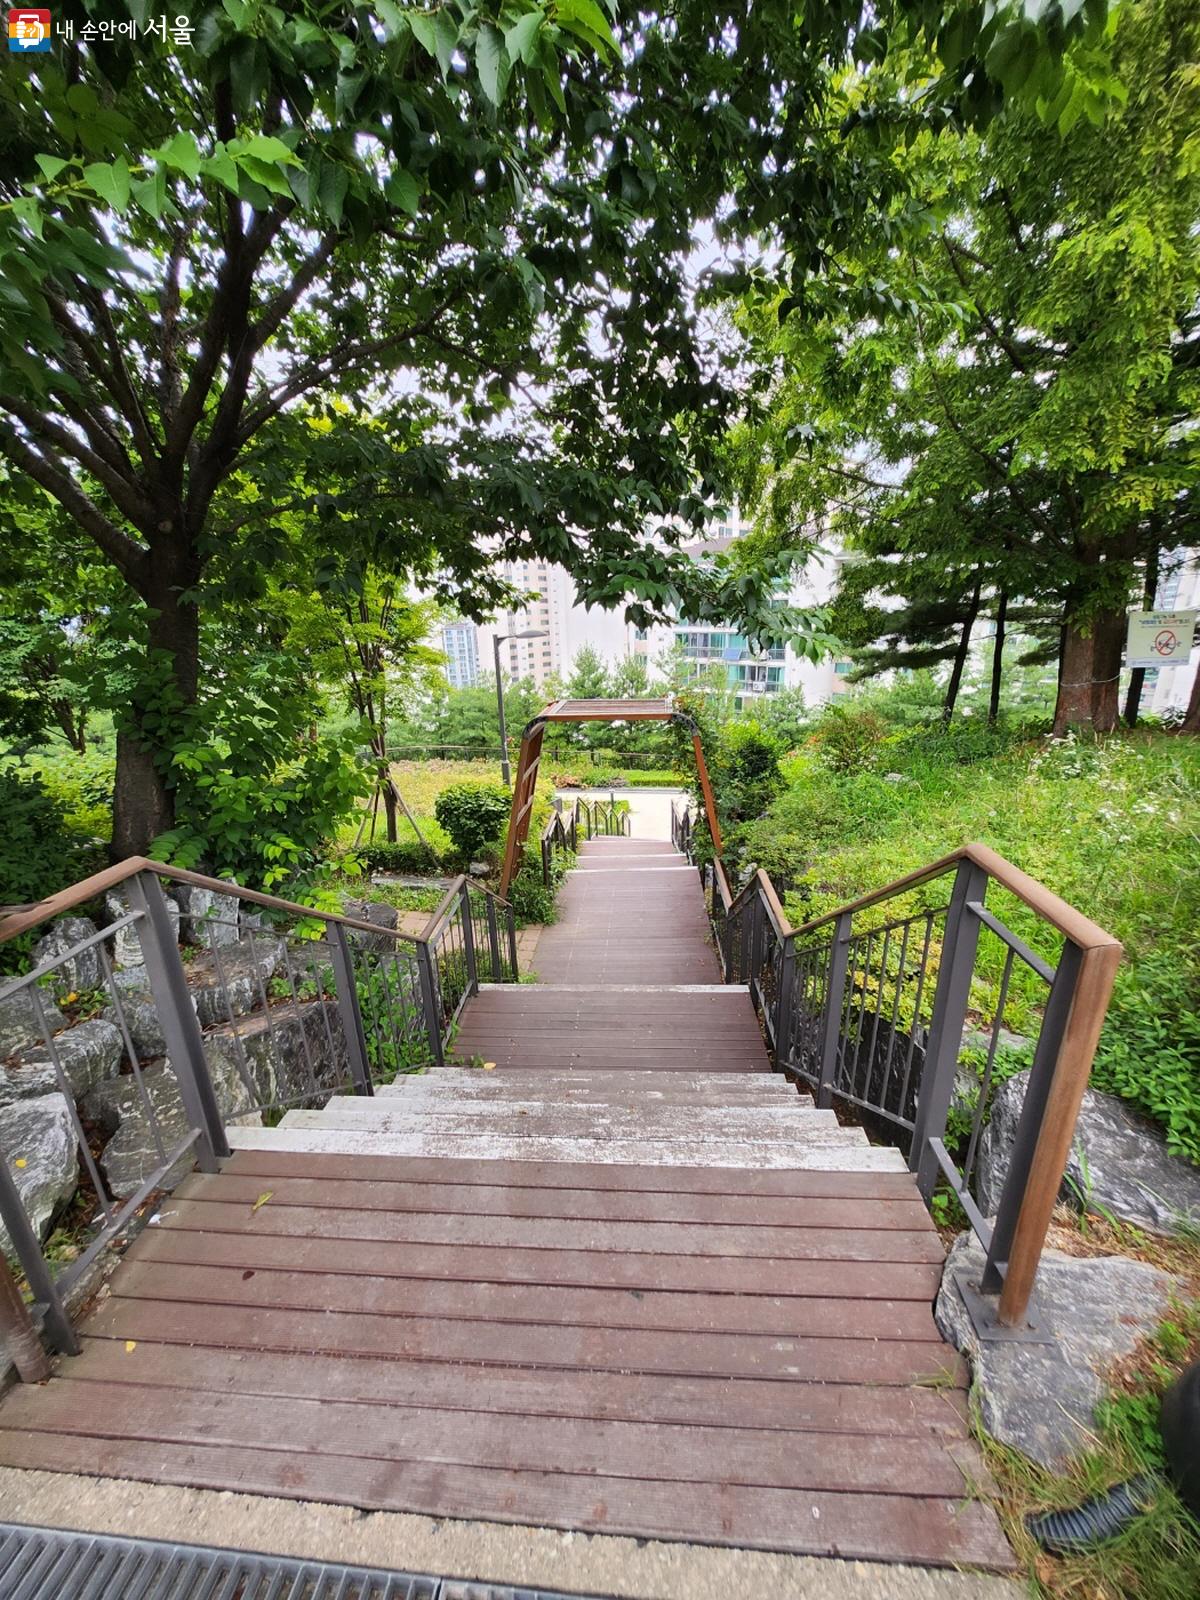 계단을 내려가면 또 다른 길로 이어진다. ©김정원